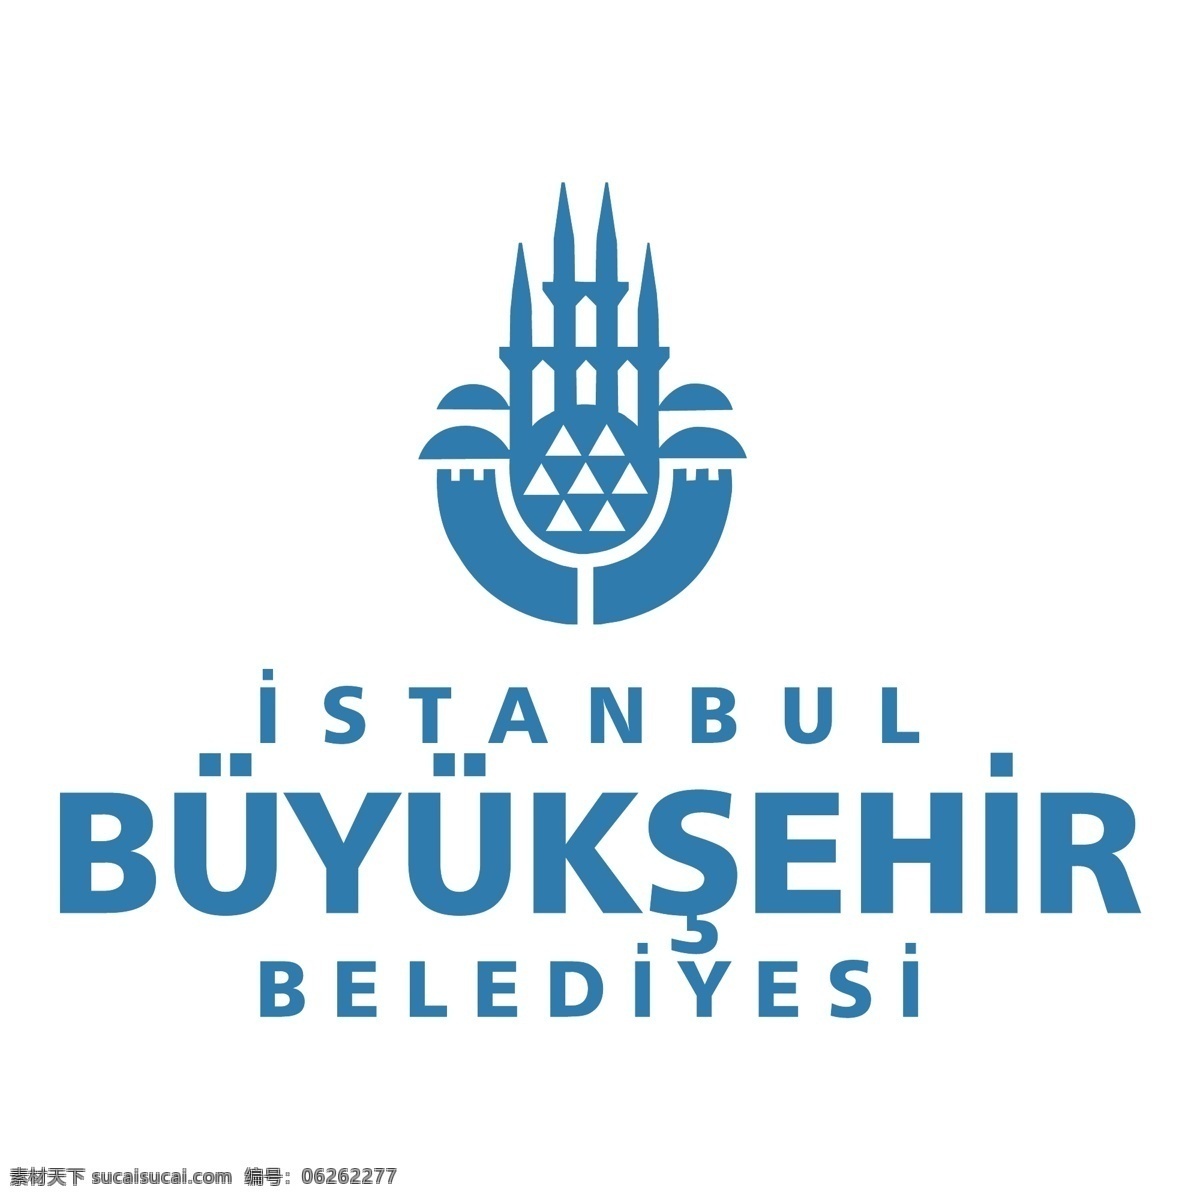 自由 伊斯坦布尔 buyuksehir belediyesi 标志 标识 白色